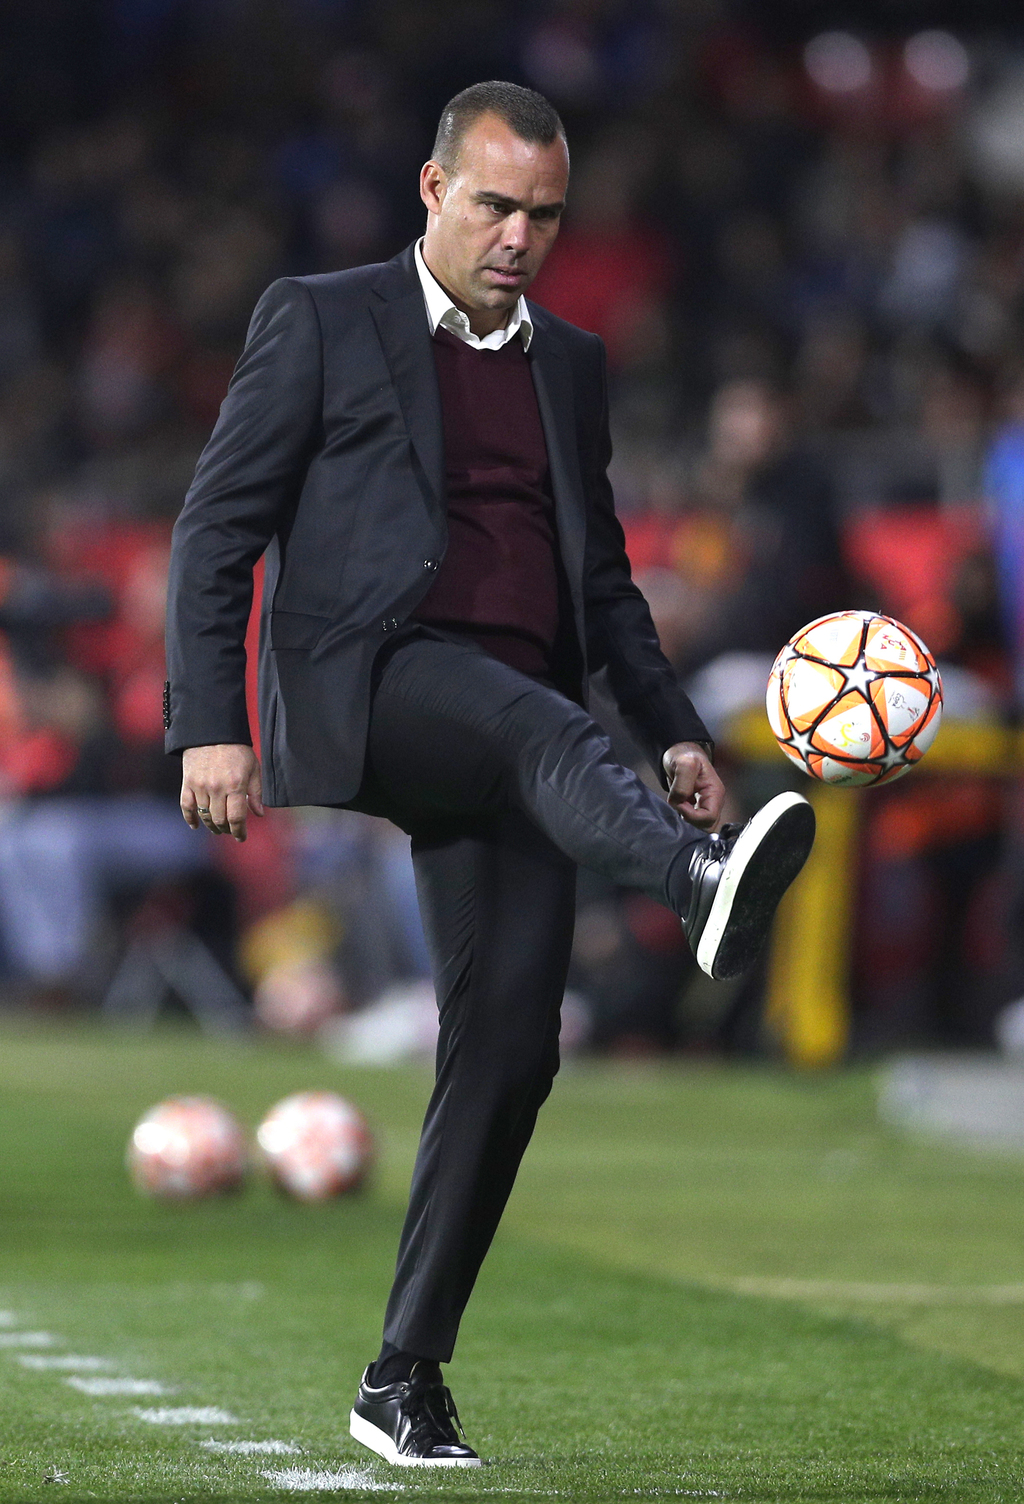 El técnico de la selección venezolana de futbol, Rafael Dudamel, controla el balón durante un partido amistoso entre Cataluña y Venezuela en el estadio Montilivi de Girona, España, el lunes 25 de marzo.